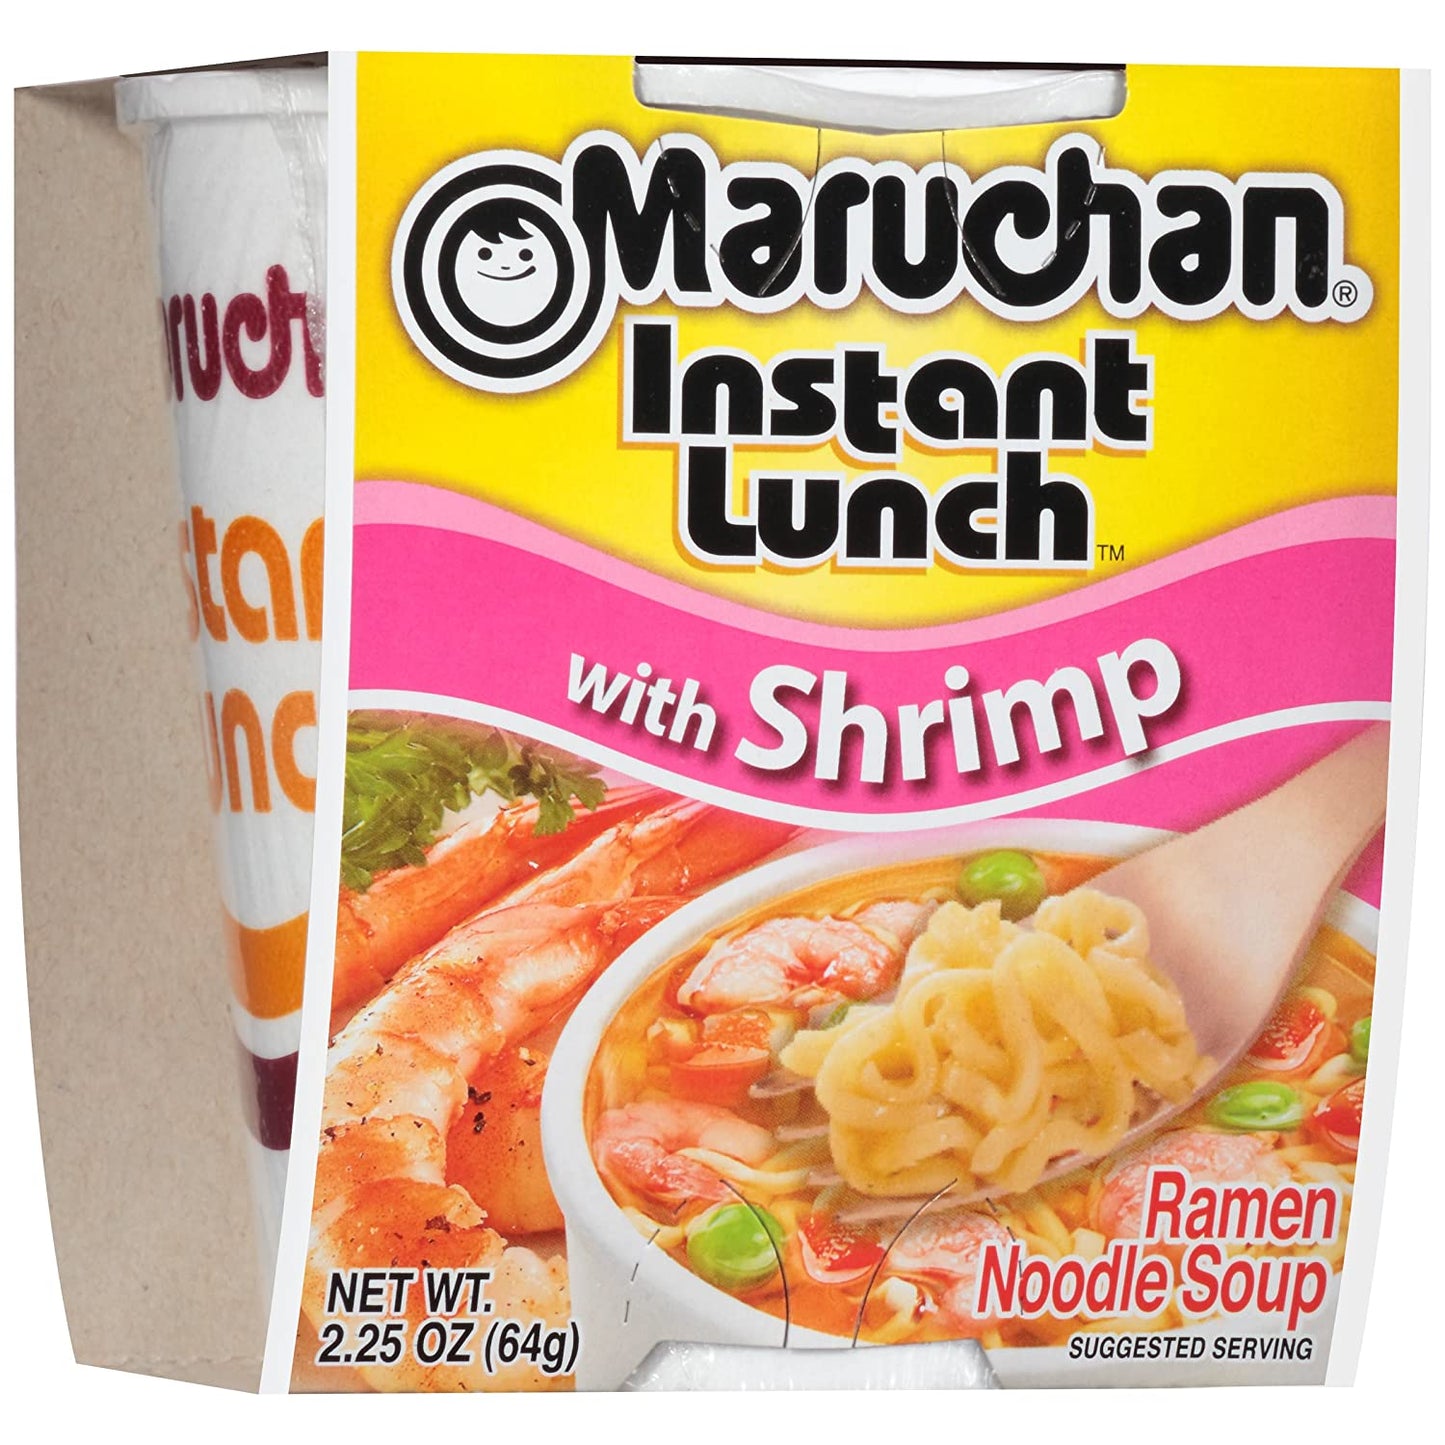 Maruchan Instant Lunch Shrimp Flavor, 2.25 Oz, Pack of 12